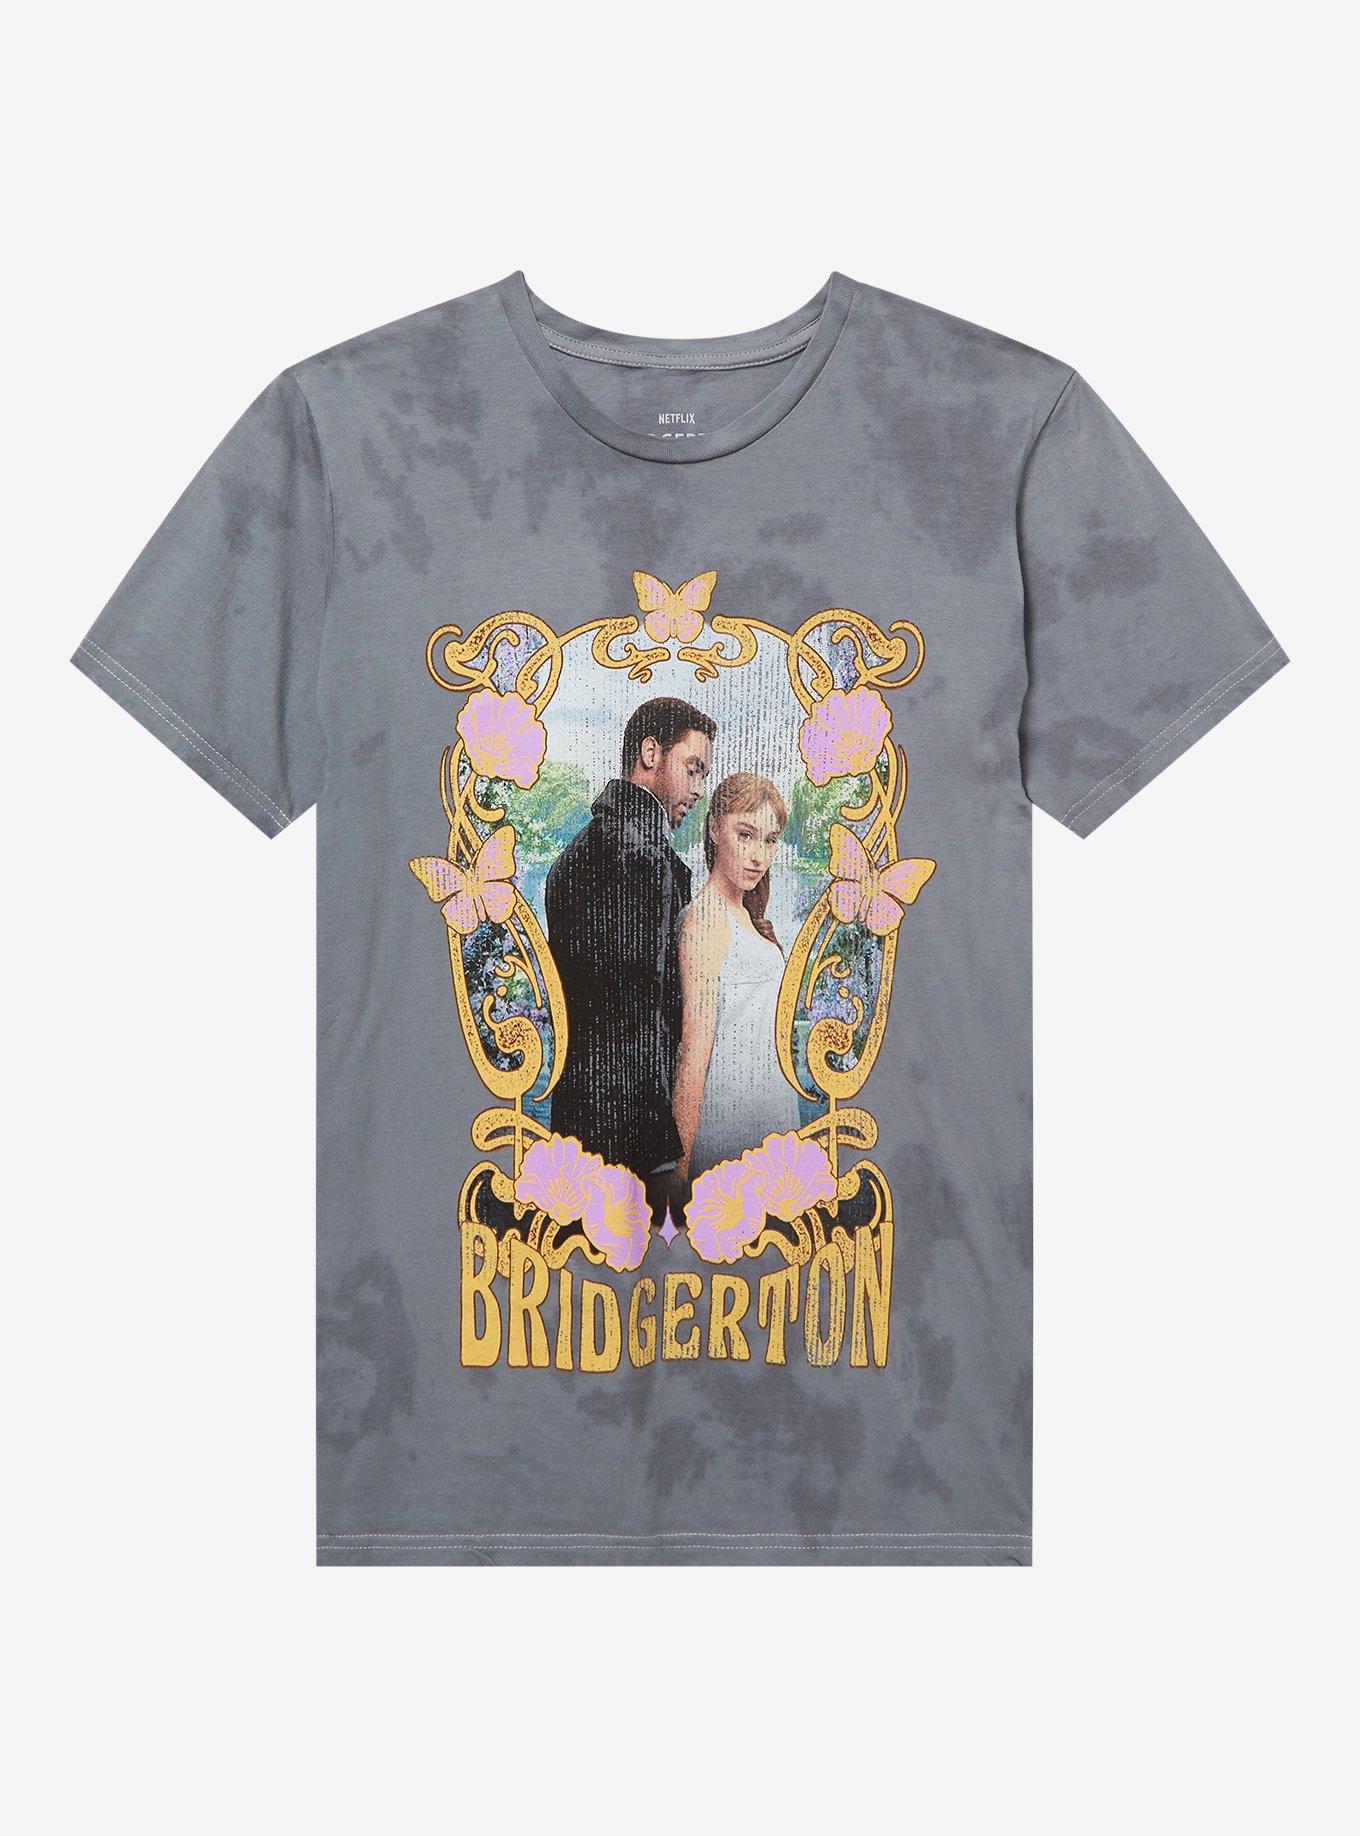 Bridgerton Daphne & Simon Tie-Dye Boyfriend Fit Girls T-Shirt, MULTI, hi-res